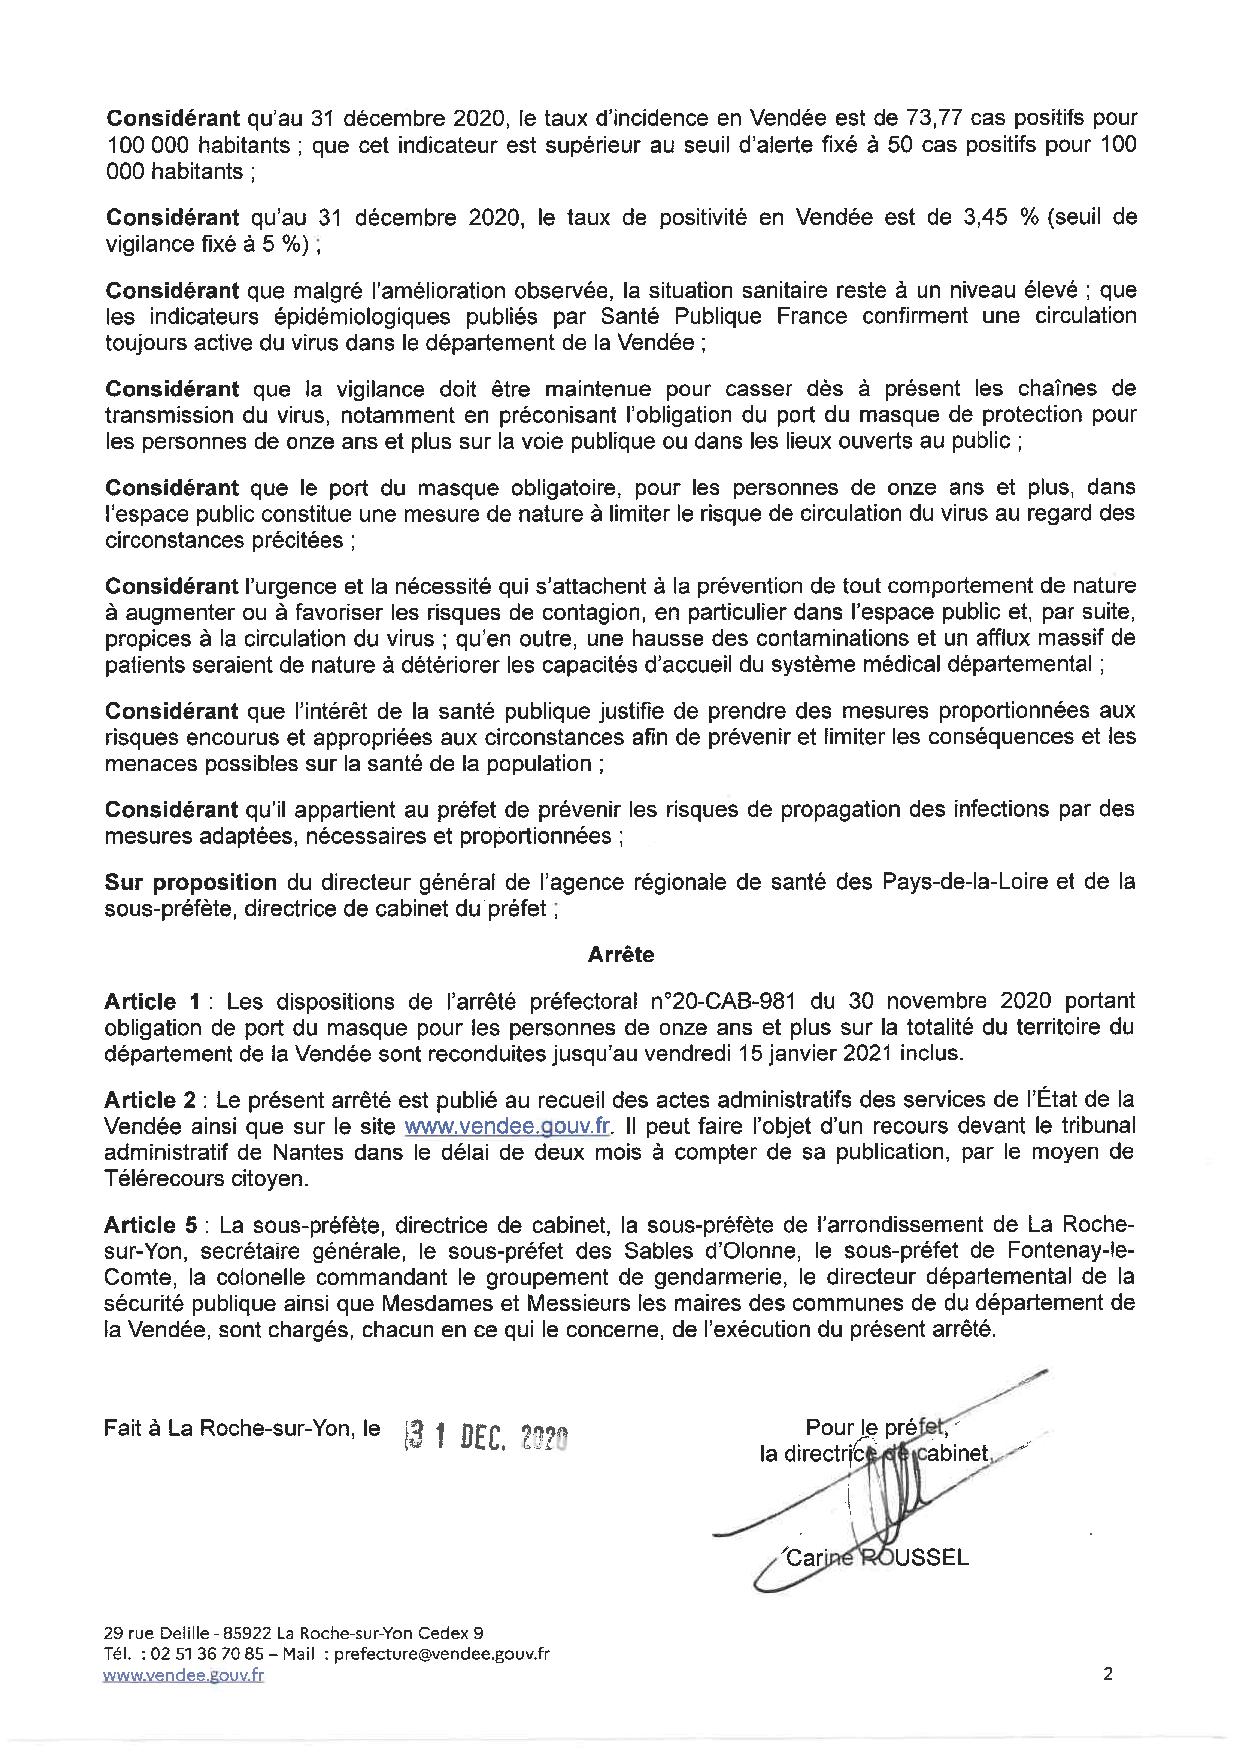 Obligation du port du masque sur l'ensemble du territoire du département de la Vendée jusqu'au 15 janvier 2021 inclus